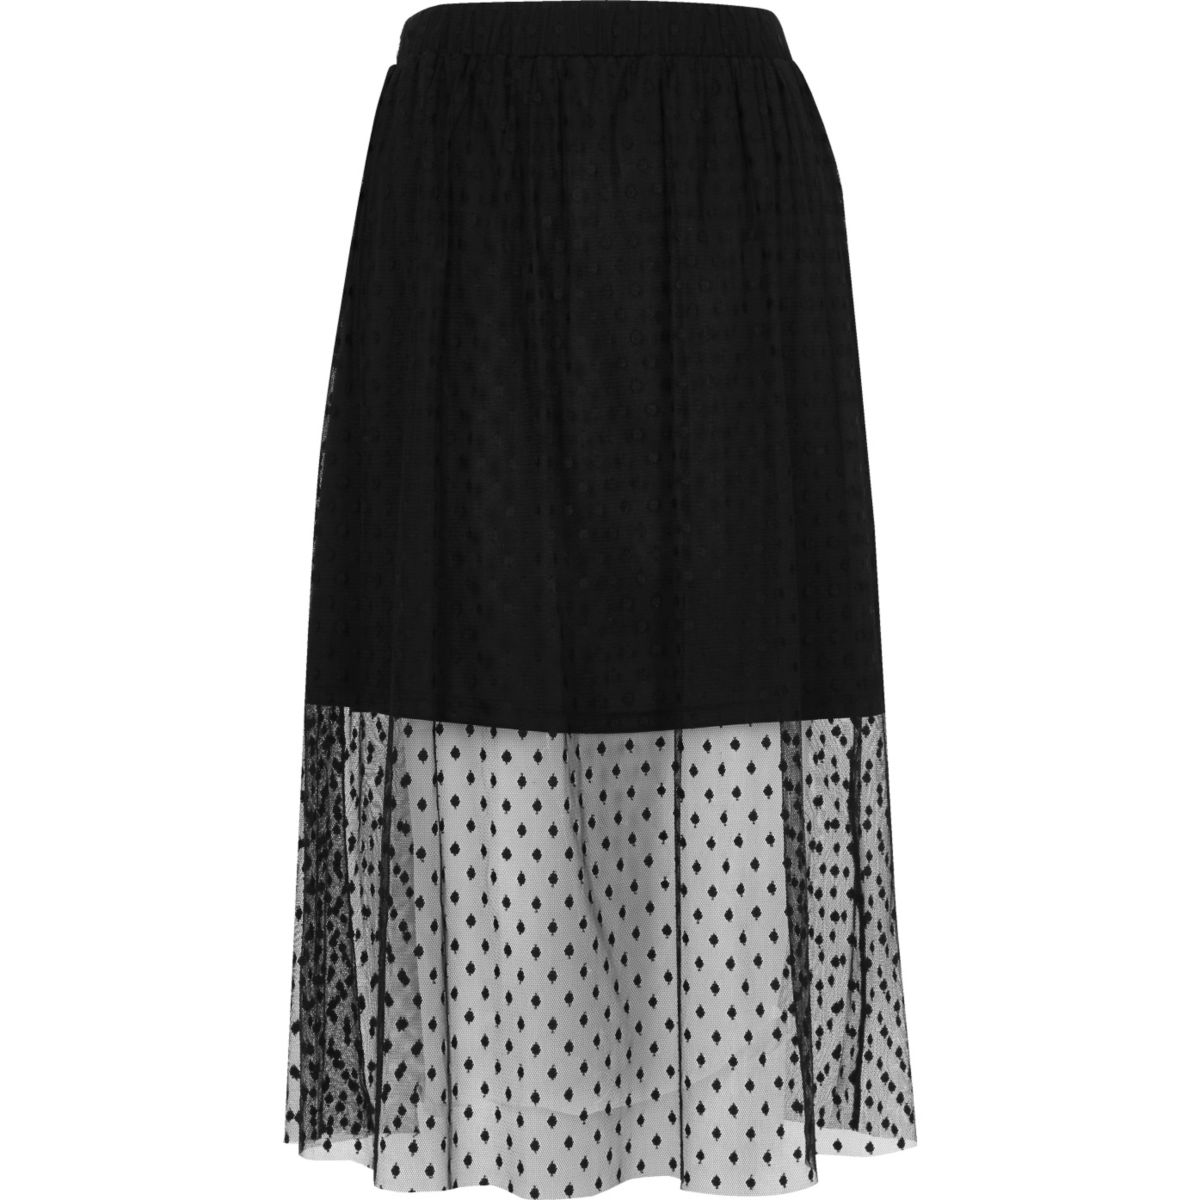 Black polka dot tulle midi skirt - Skirts - Sale - women